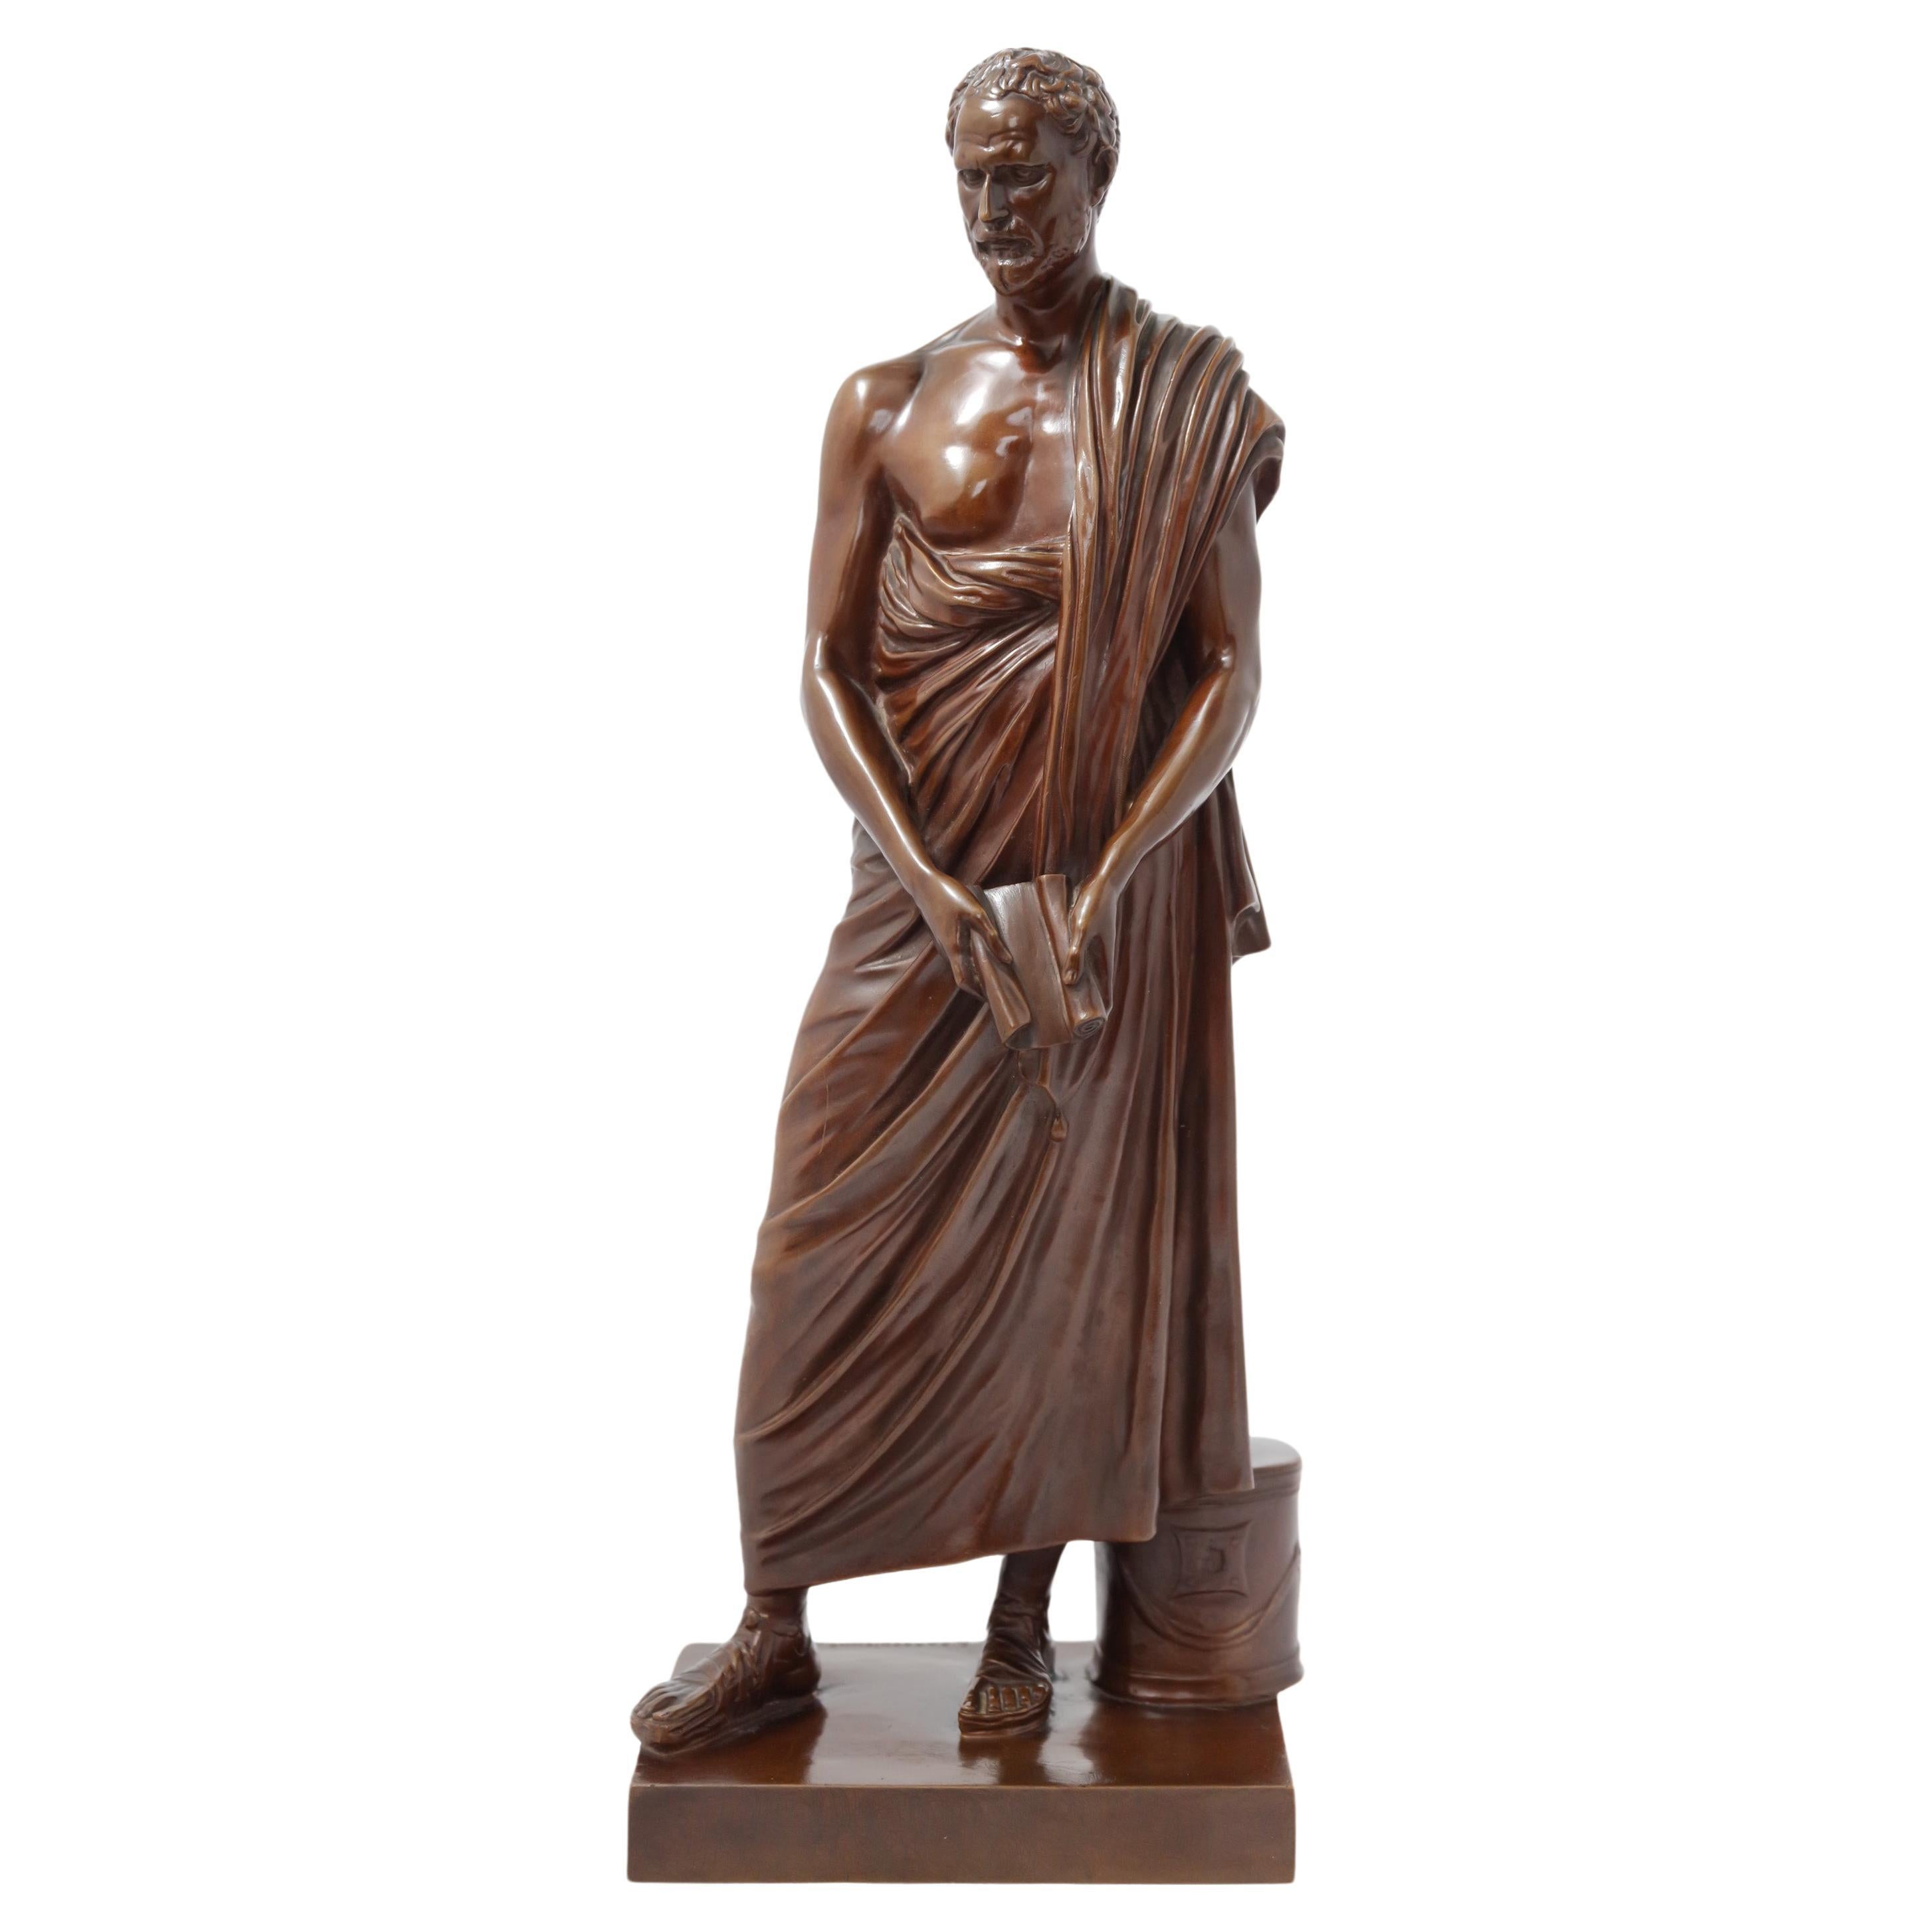 Sculpture Demosthenes en bronze de la fonderie Barbedienne du 19ème siècle